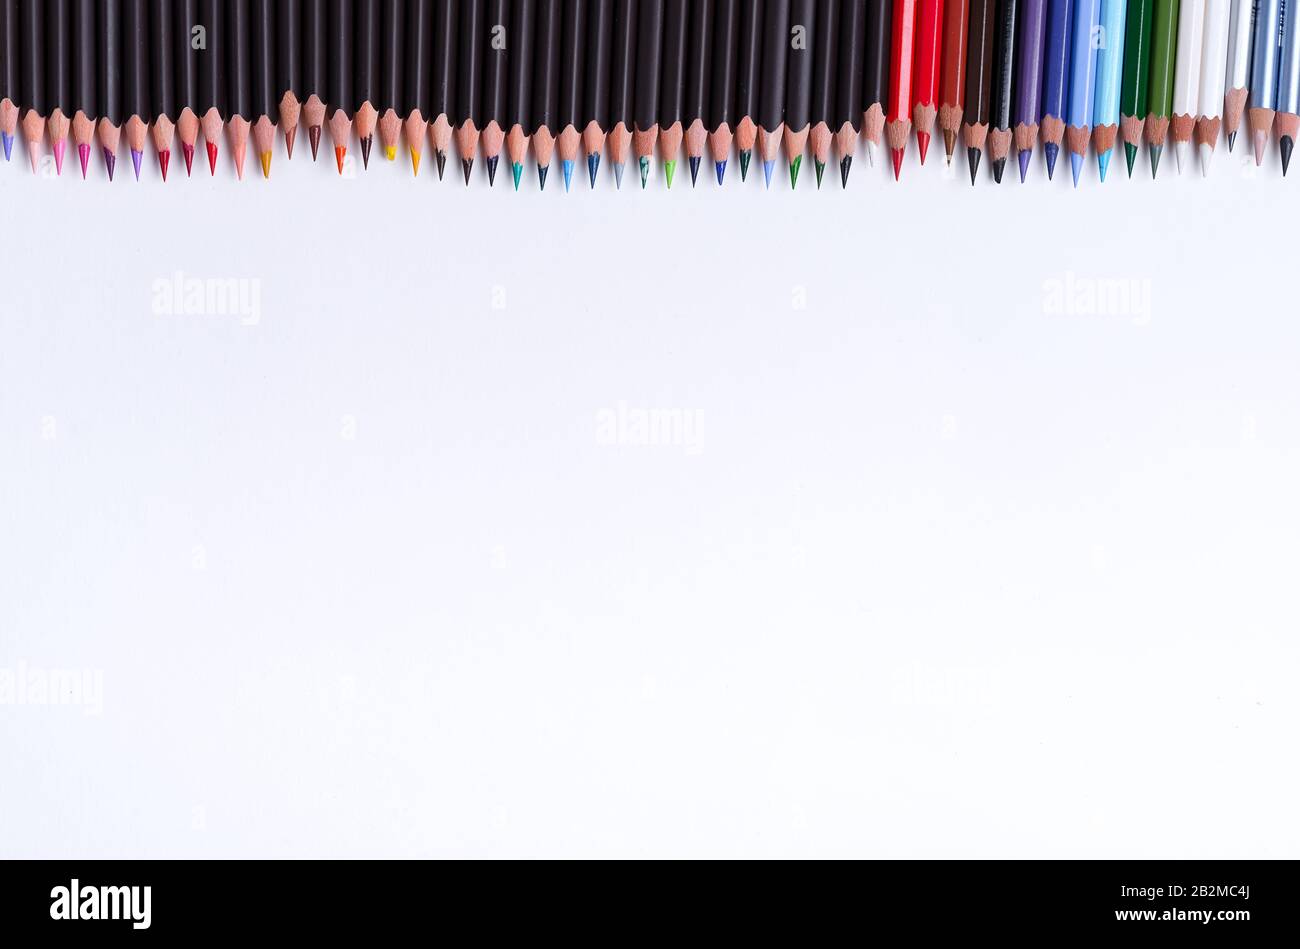 Bordure de peinture double face à partir de crayons multicolores sur fond blanc avec espace de copie. Vue de dessus. Banque D'Images